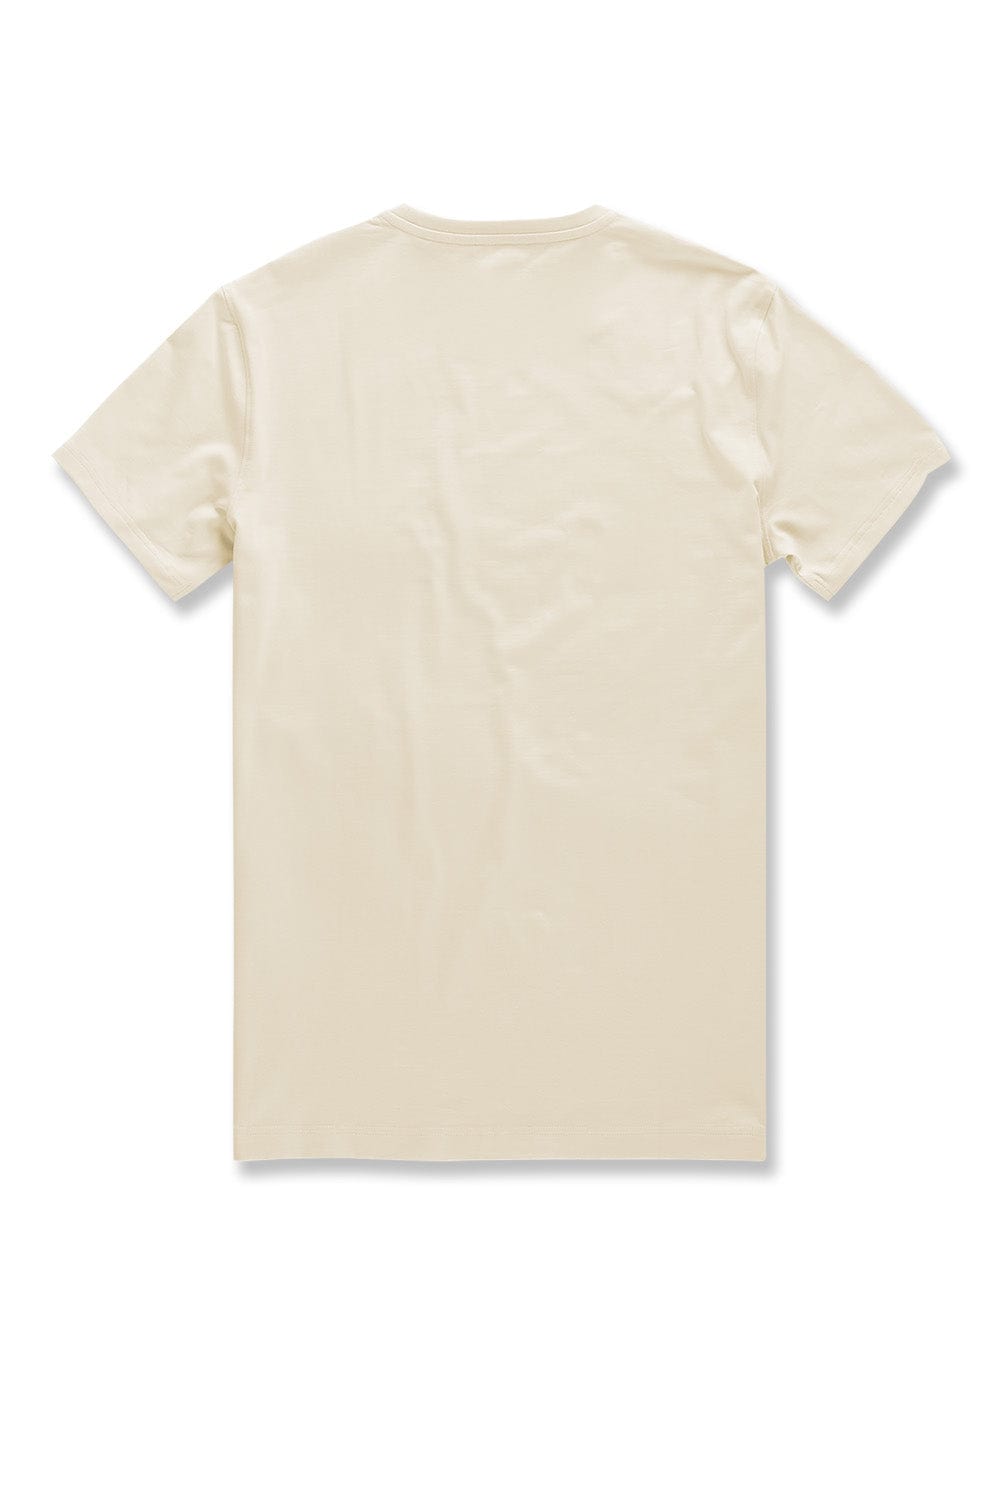 JC Big Men Big Men's Premium Crewneck T-Shirt (Cream)